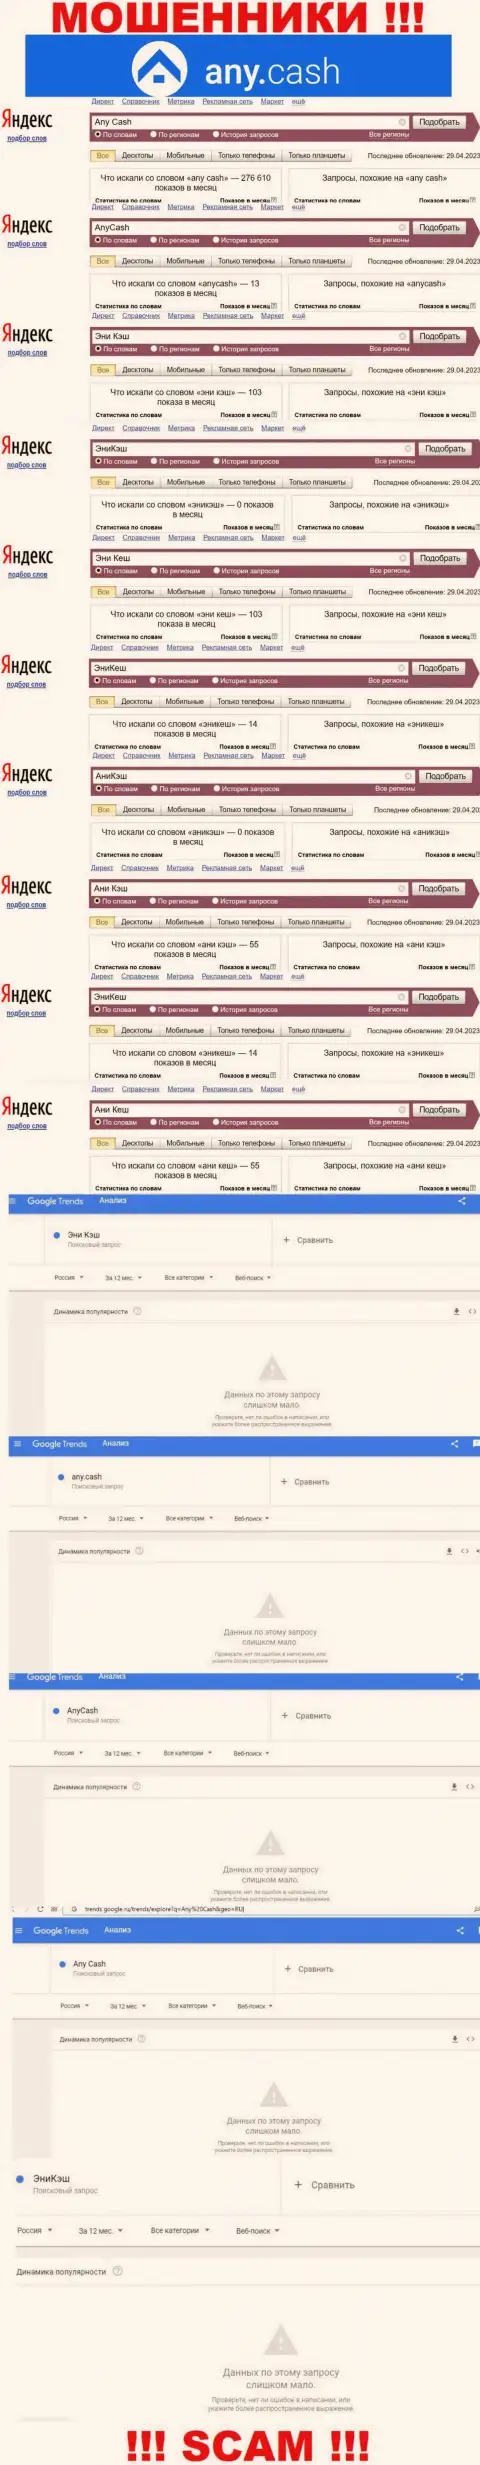 Скриншот результата поисковых запросов по неправомерно действующей организации ЭниКеш